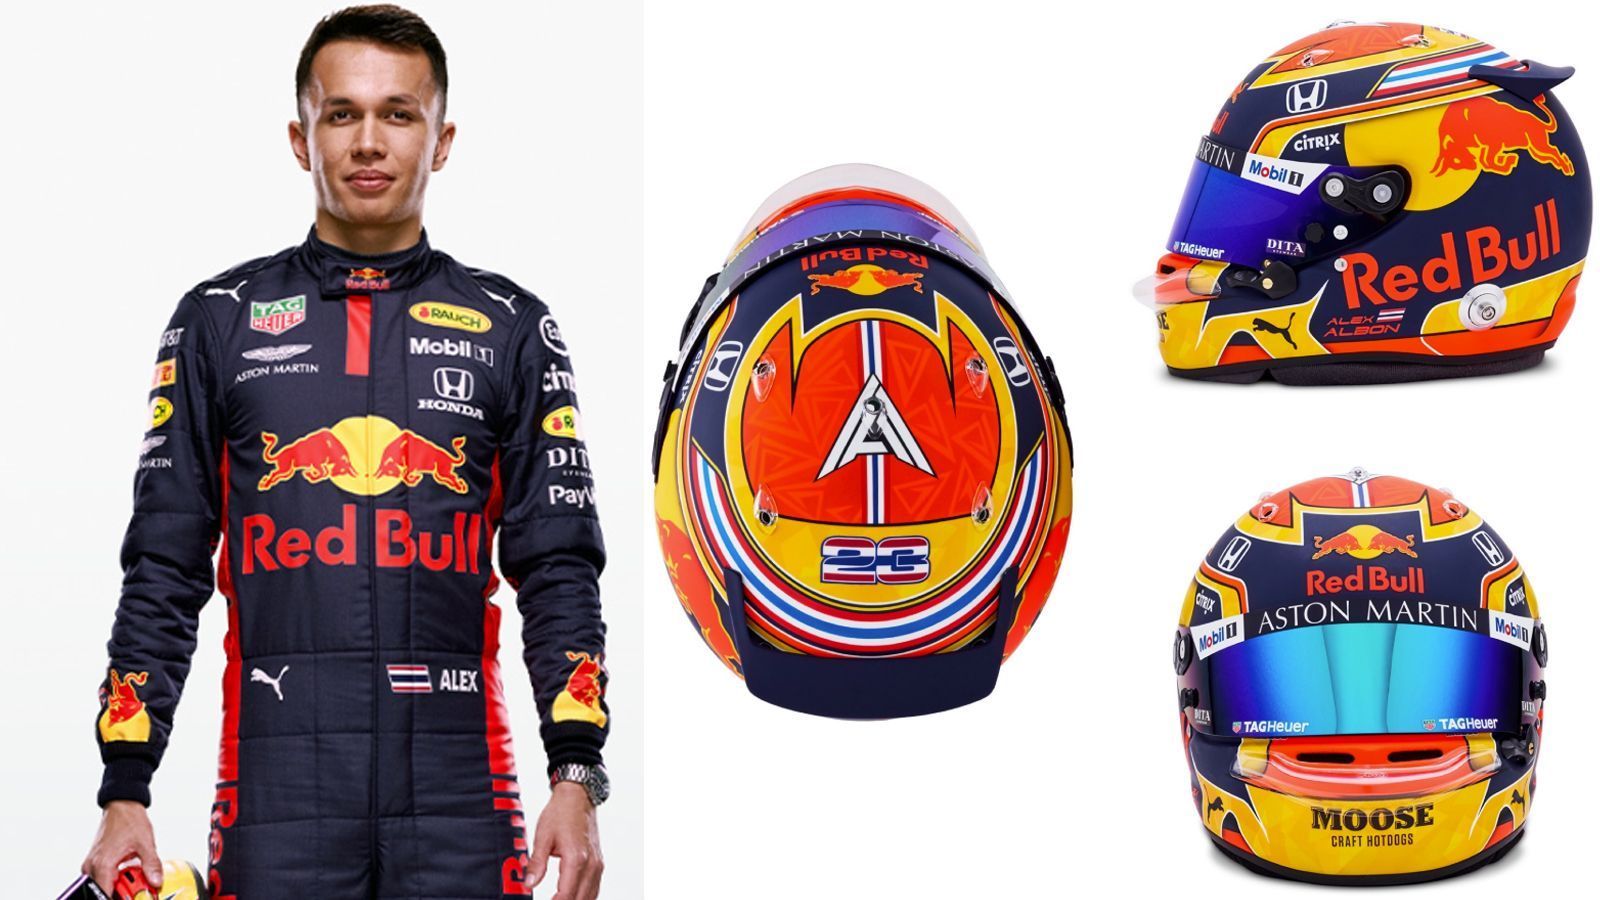 
                <strong>Alexander Albon (Red Bull Racing)</strong><br>
                Alexander Albon beschreibt seinen neuen Helm so: "Das Design des neuen Helms lehnt sich an jenes der vergangenen Saison an. An der Oberseite und auch als Streifen, die nach vorne führen, trage ich die thailändischen Farben. Generell wollte ich ein einfaches Design, aber genau das mag ich. Mit dem matten Blau als Grundton und dem Rot und Gelb von Red Bull sieht das sehr schön aus".
              